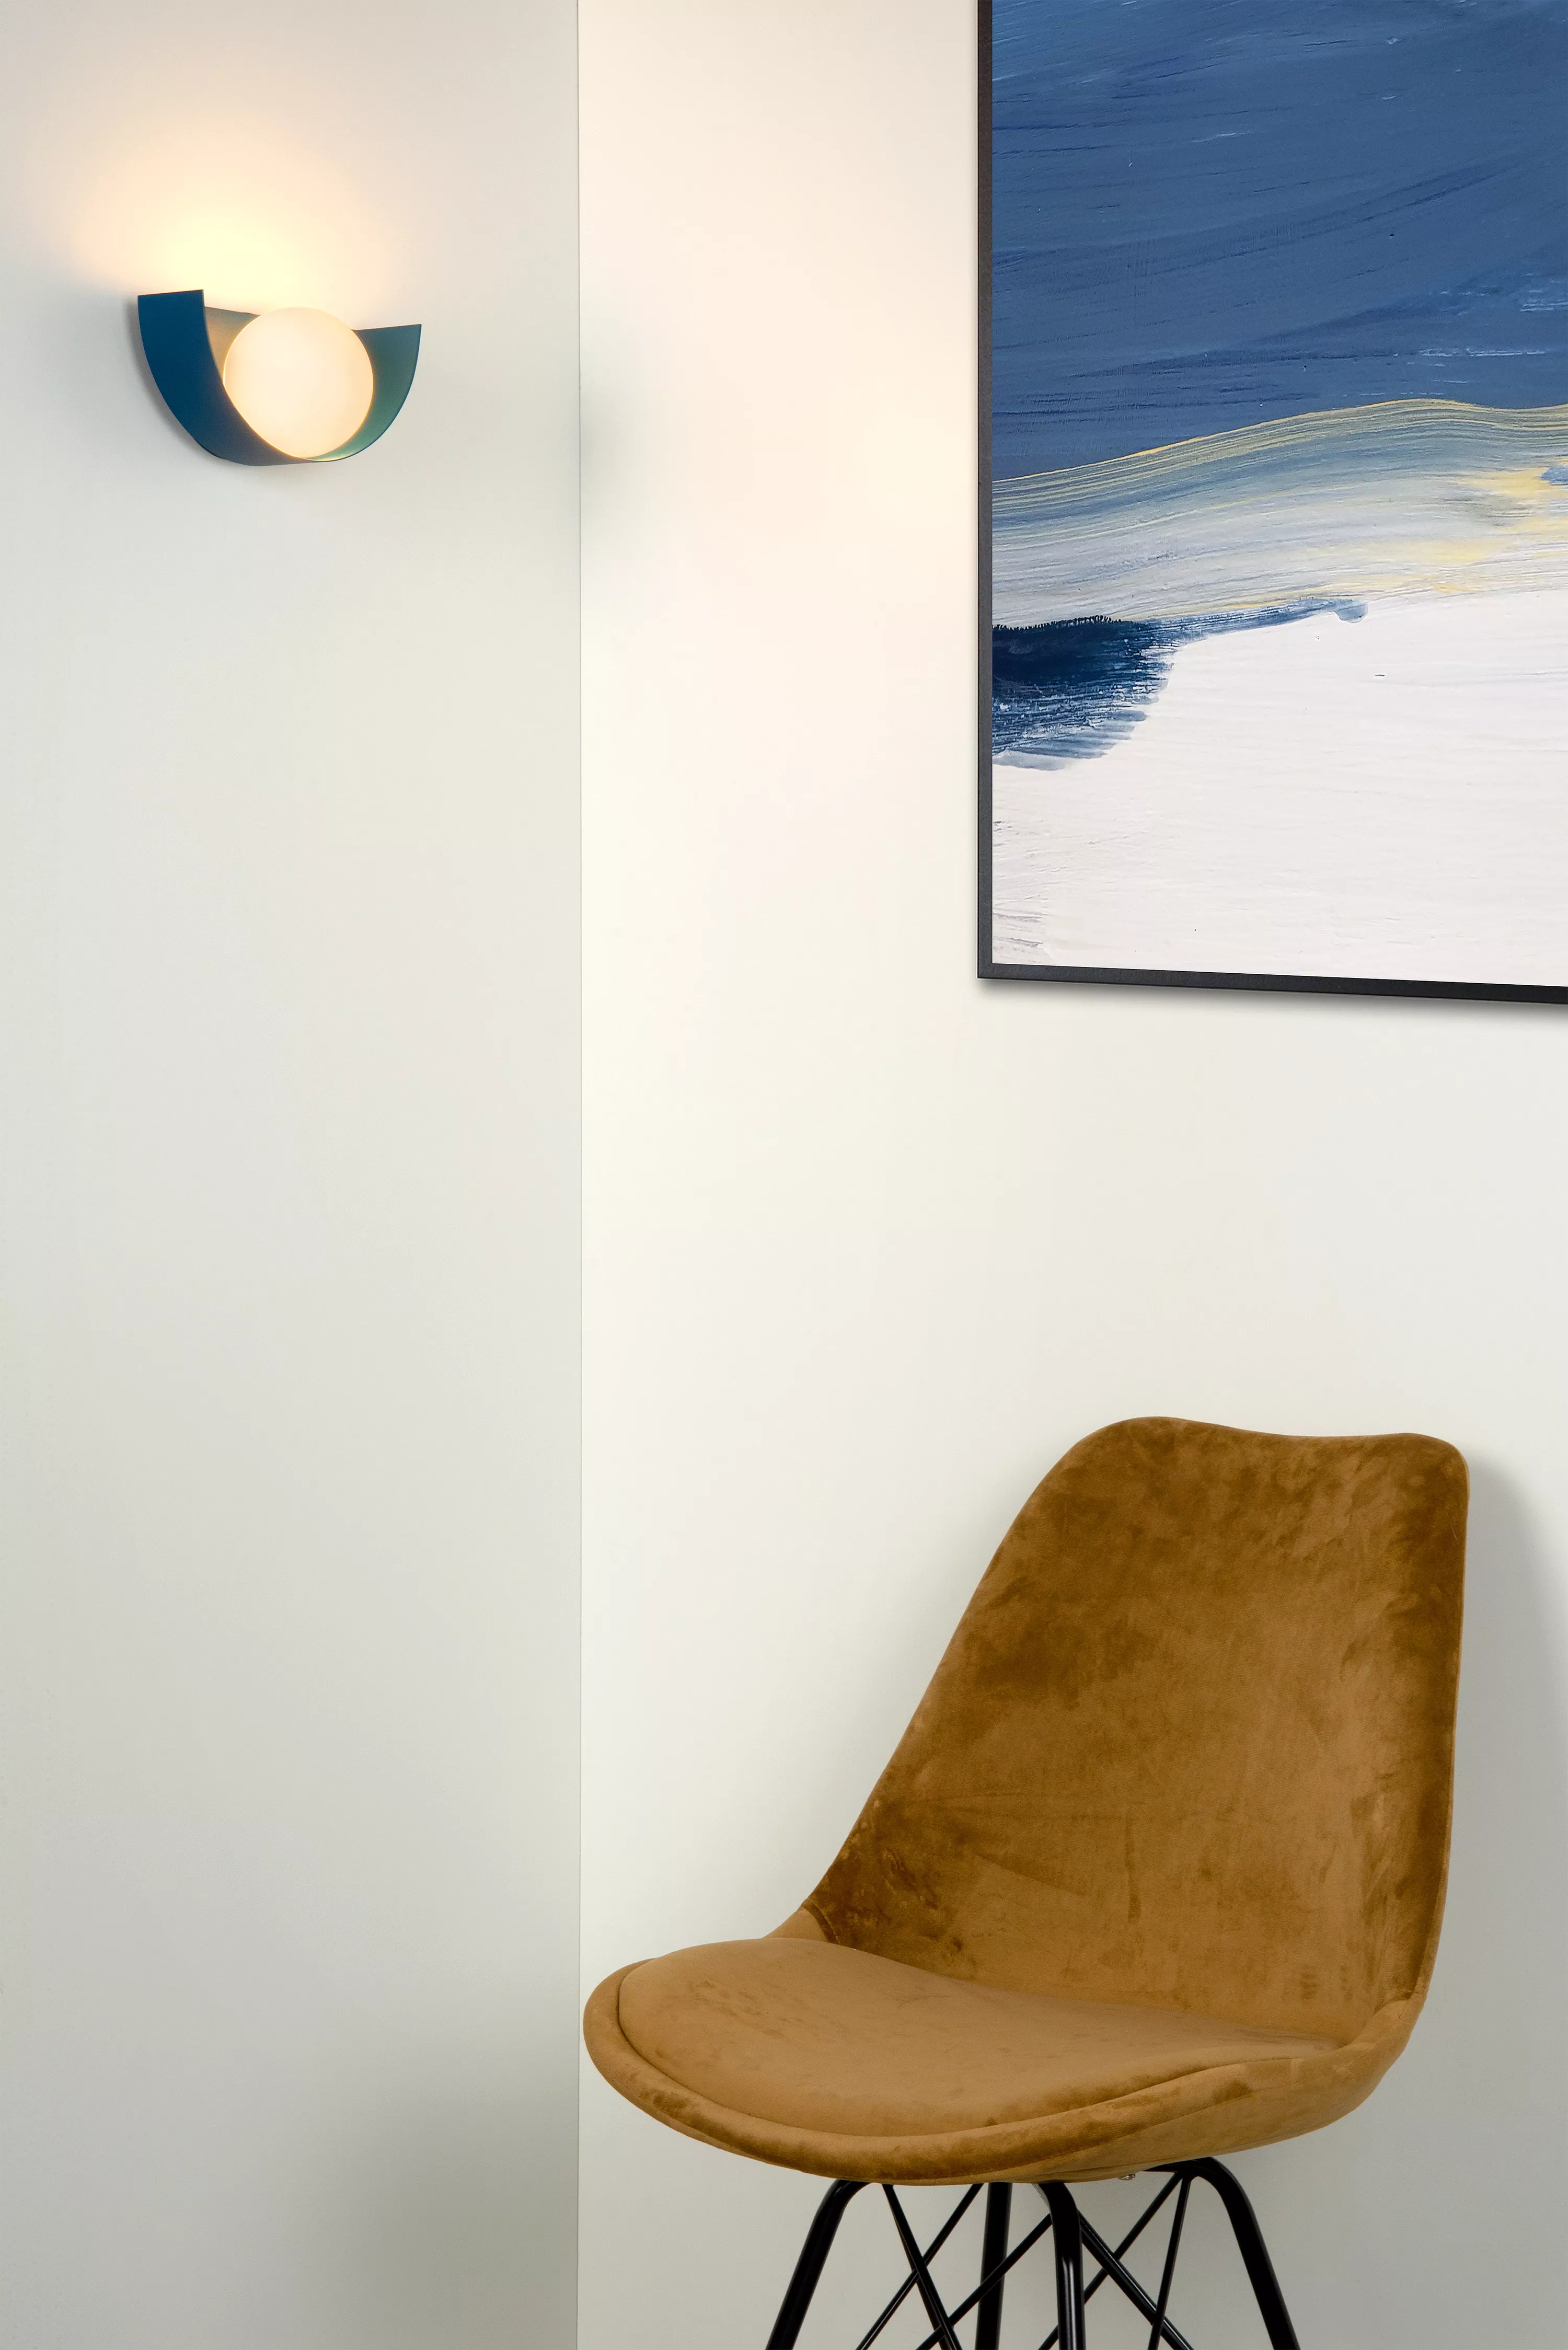 Dekorativní nástěnná lampa Benni v modré barvě dodá světlo vaší ložnici, obývacímu pokoji nebo chodbě.